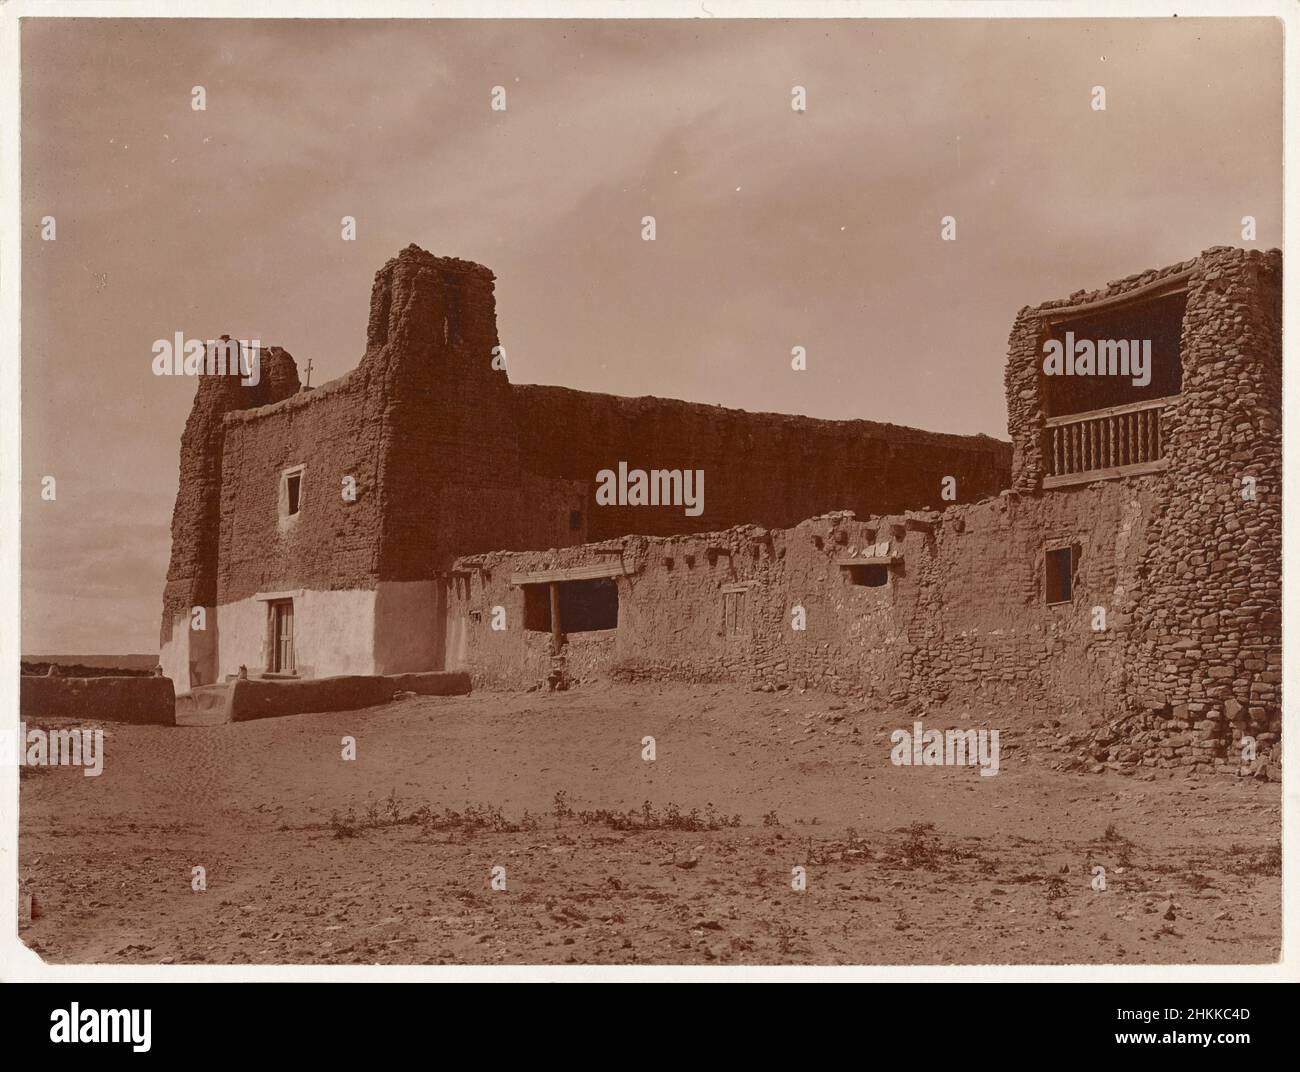 Stampa fotografica vintage ca. 1905 della Missione San Esteban Rey, una vecchia chiesa costruita ca. 1641 ad Acoma Pueblo, New Mexico. Edward S. Curtis, 1868-1952, fotografo Foto Stock